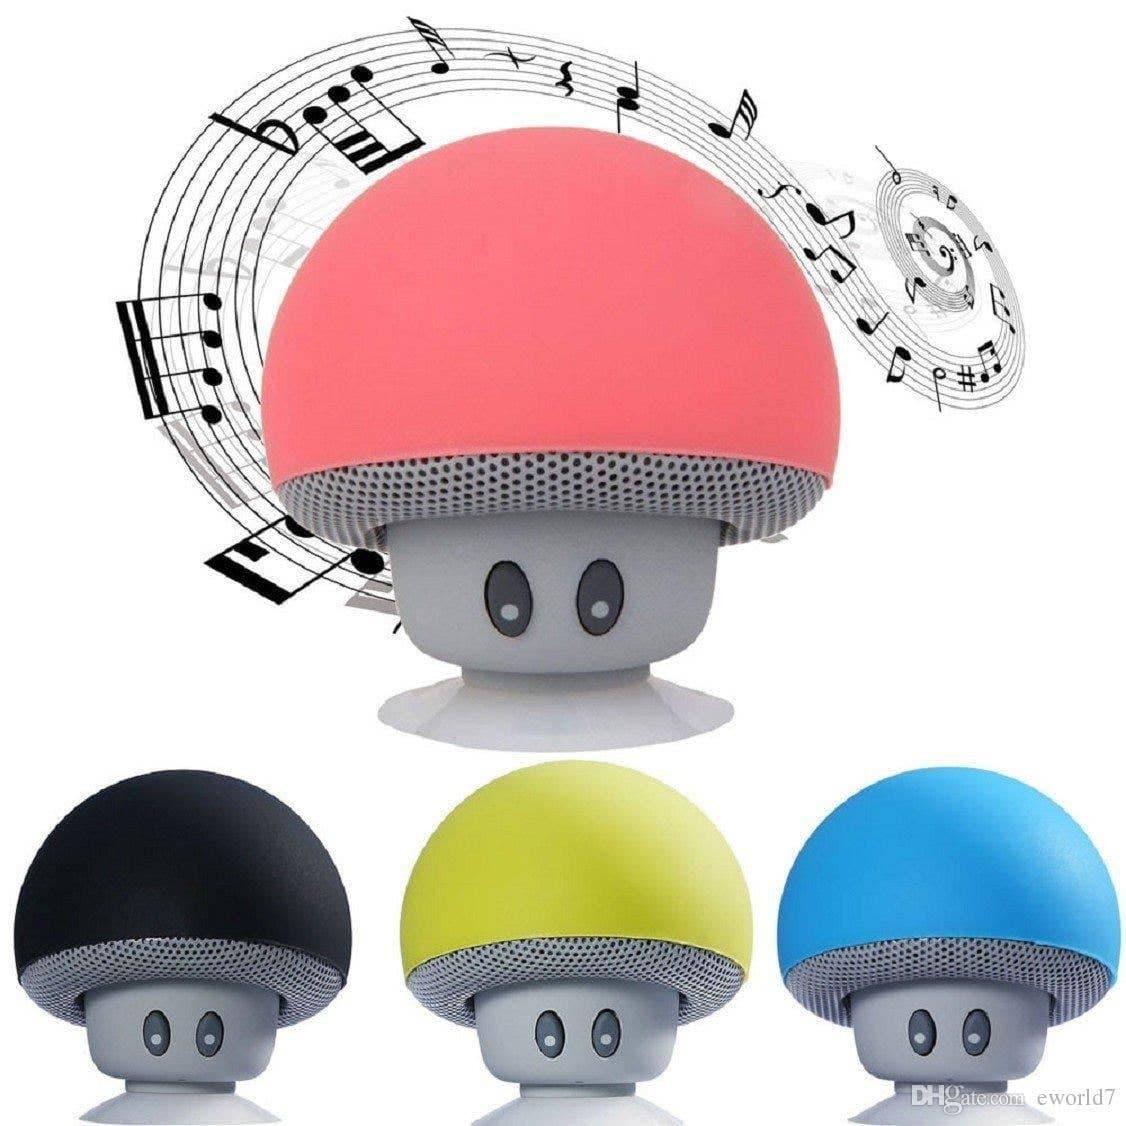 Mushroom Bluetooth Speaker - Random Hippie